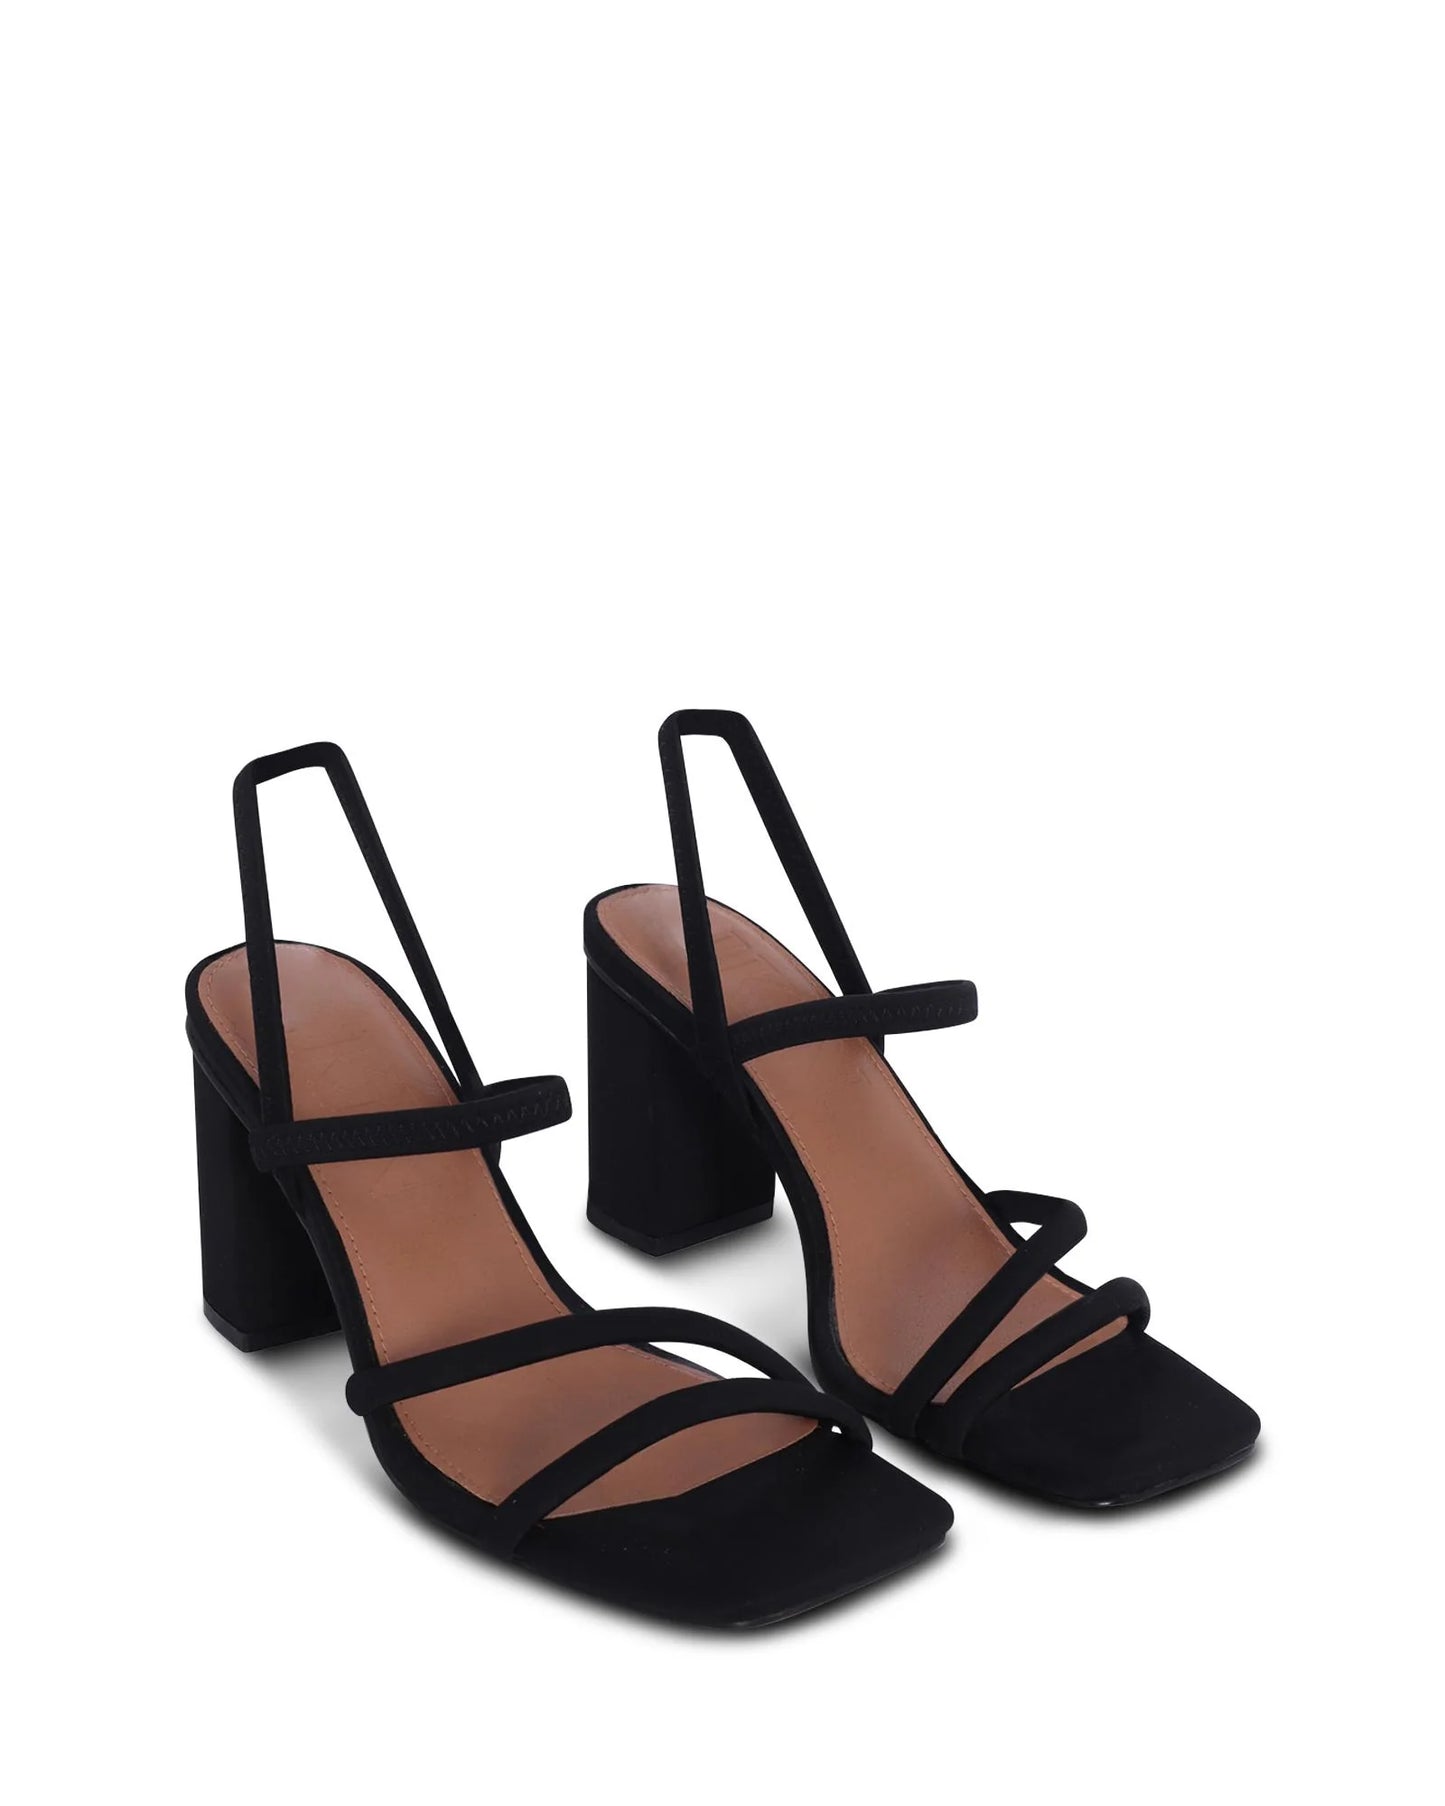 COLOMBO STRAPPY BLOCK HEEL - SKIN FOOTWEAR - 36, 37, 38, 39, 40, 41, BF, BLACK, block heel, NUDE, womens footwear - Stomp Shoes Darwin